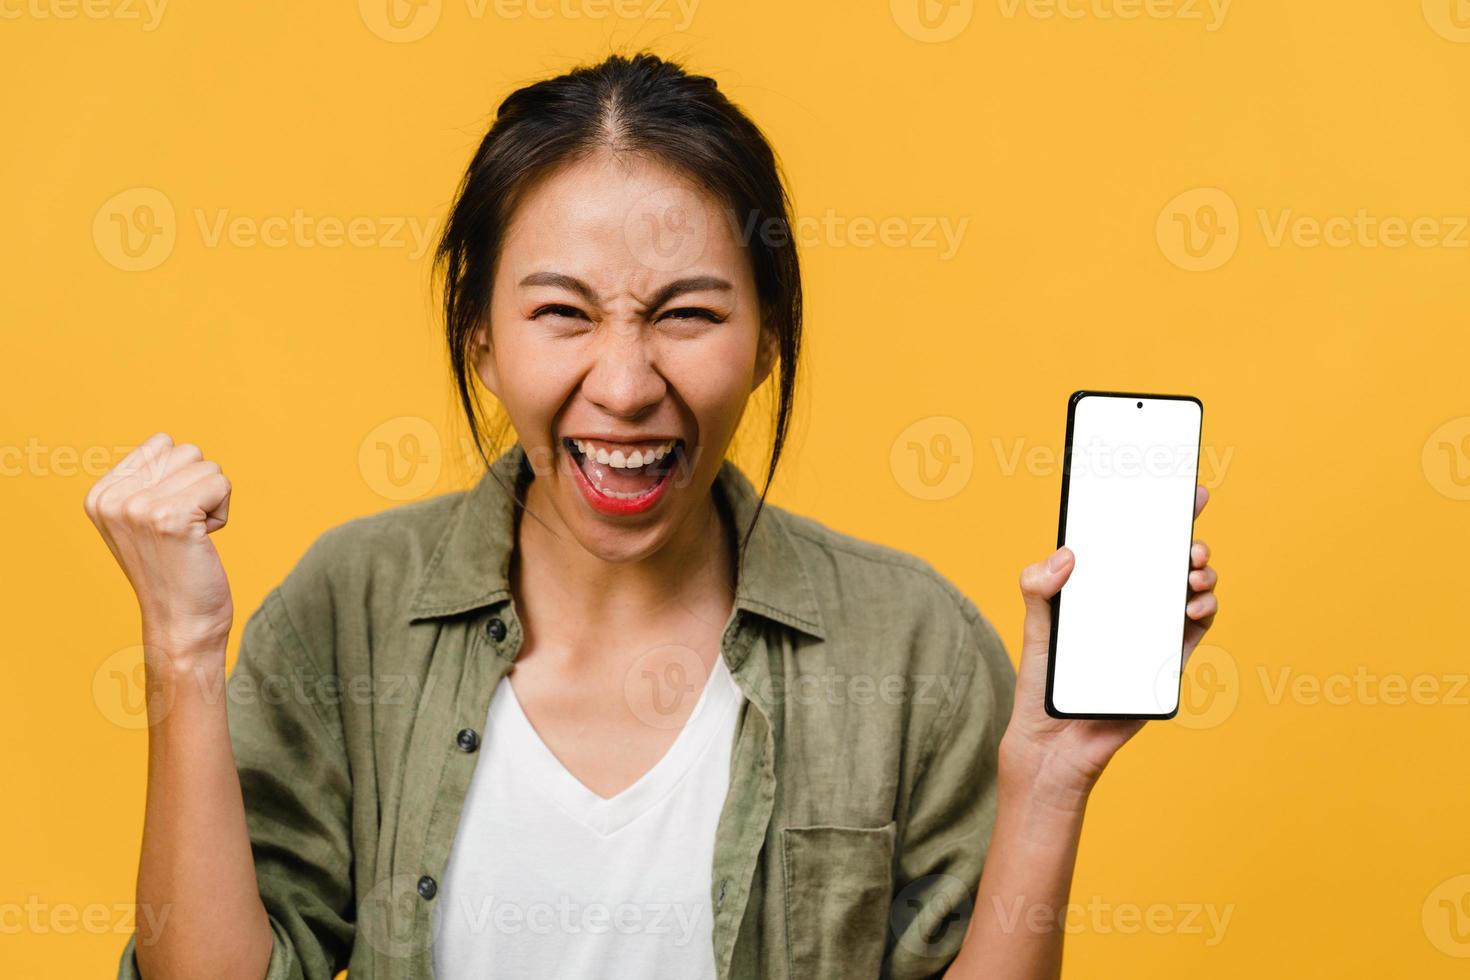 jonge aziatische dame toont een leeg smartphonescherm met positieve uitdrukking, glimlacht breed, gekleed in casual kleding en voelt zich gelukkig op gele achtergrond. mobiele telefoon met wit scherm in vrouwelijke hand. foto